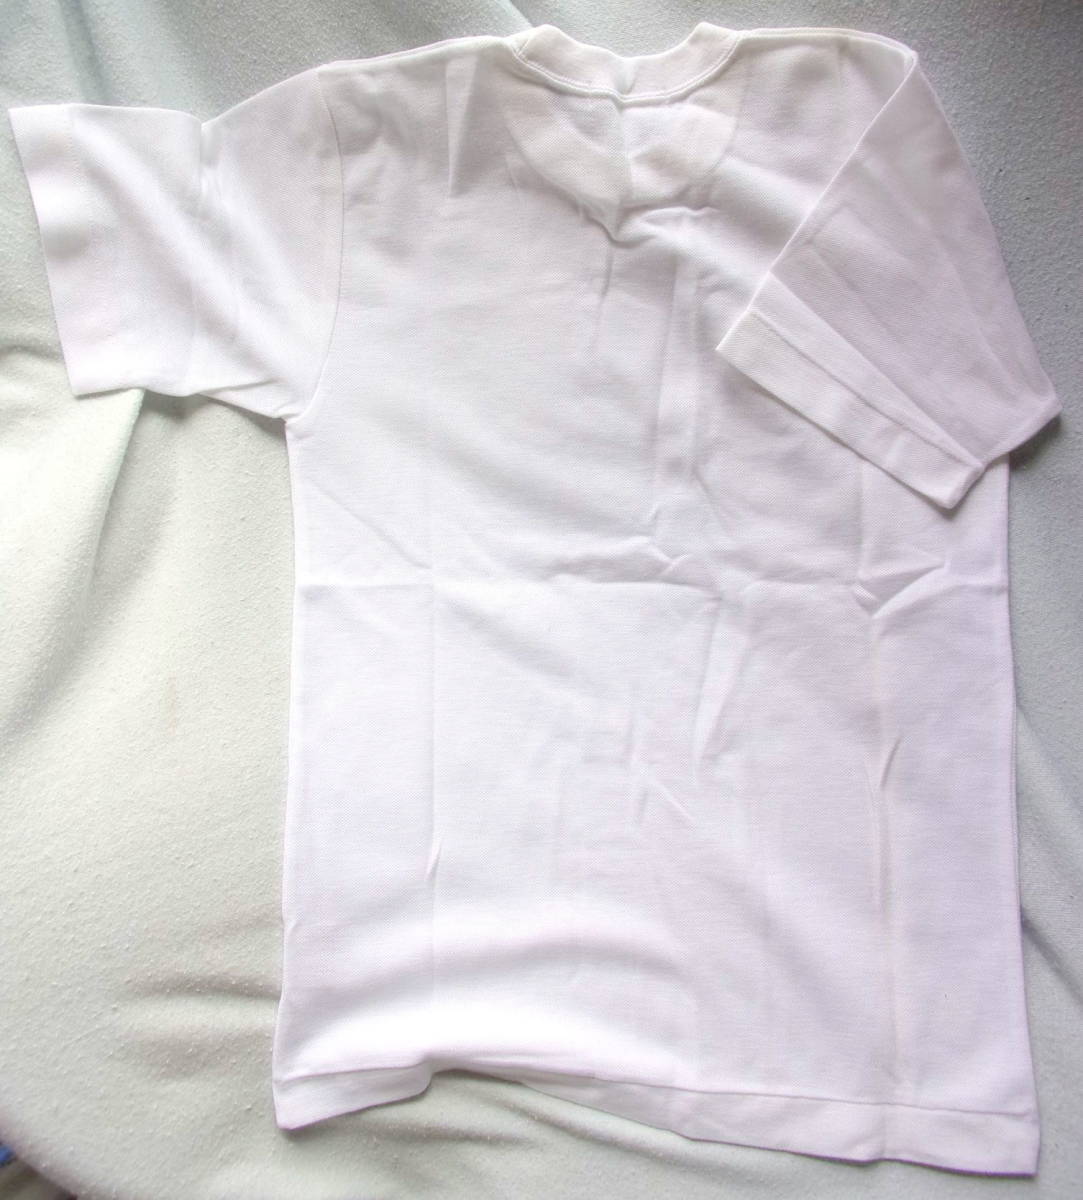 [ с дефектом ]ceepo спортивная форма рубашка J-13 размер рост 150cm SS размер степень * не использовался 